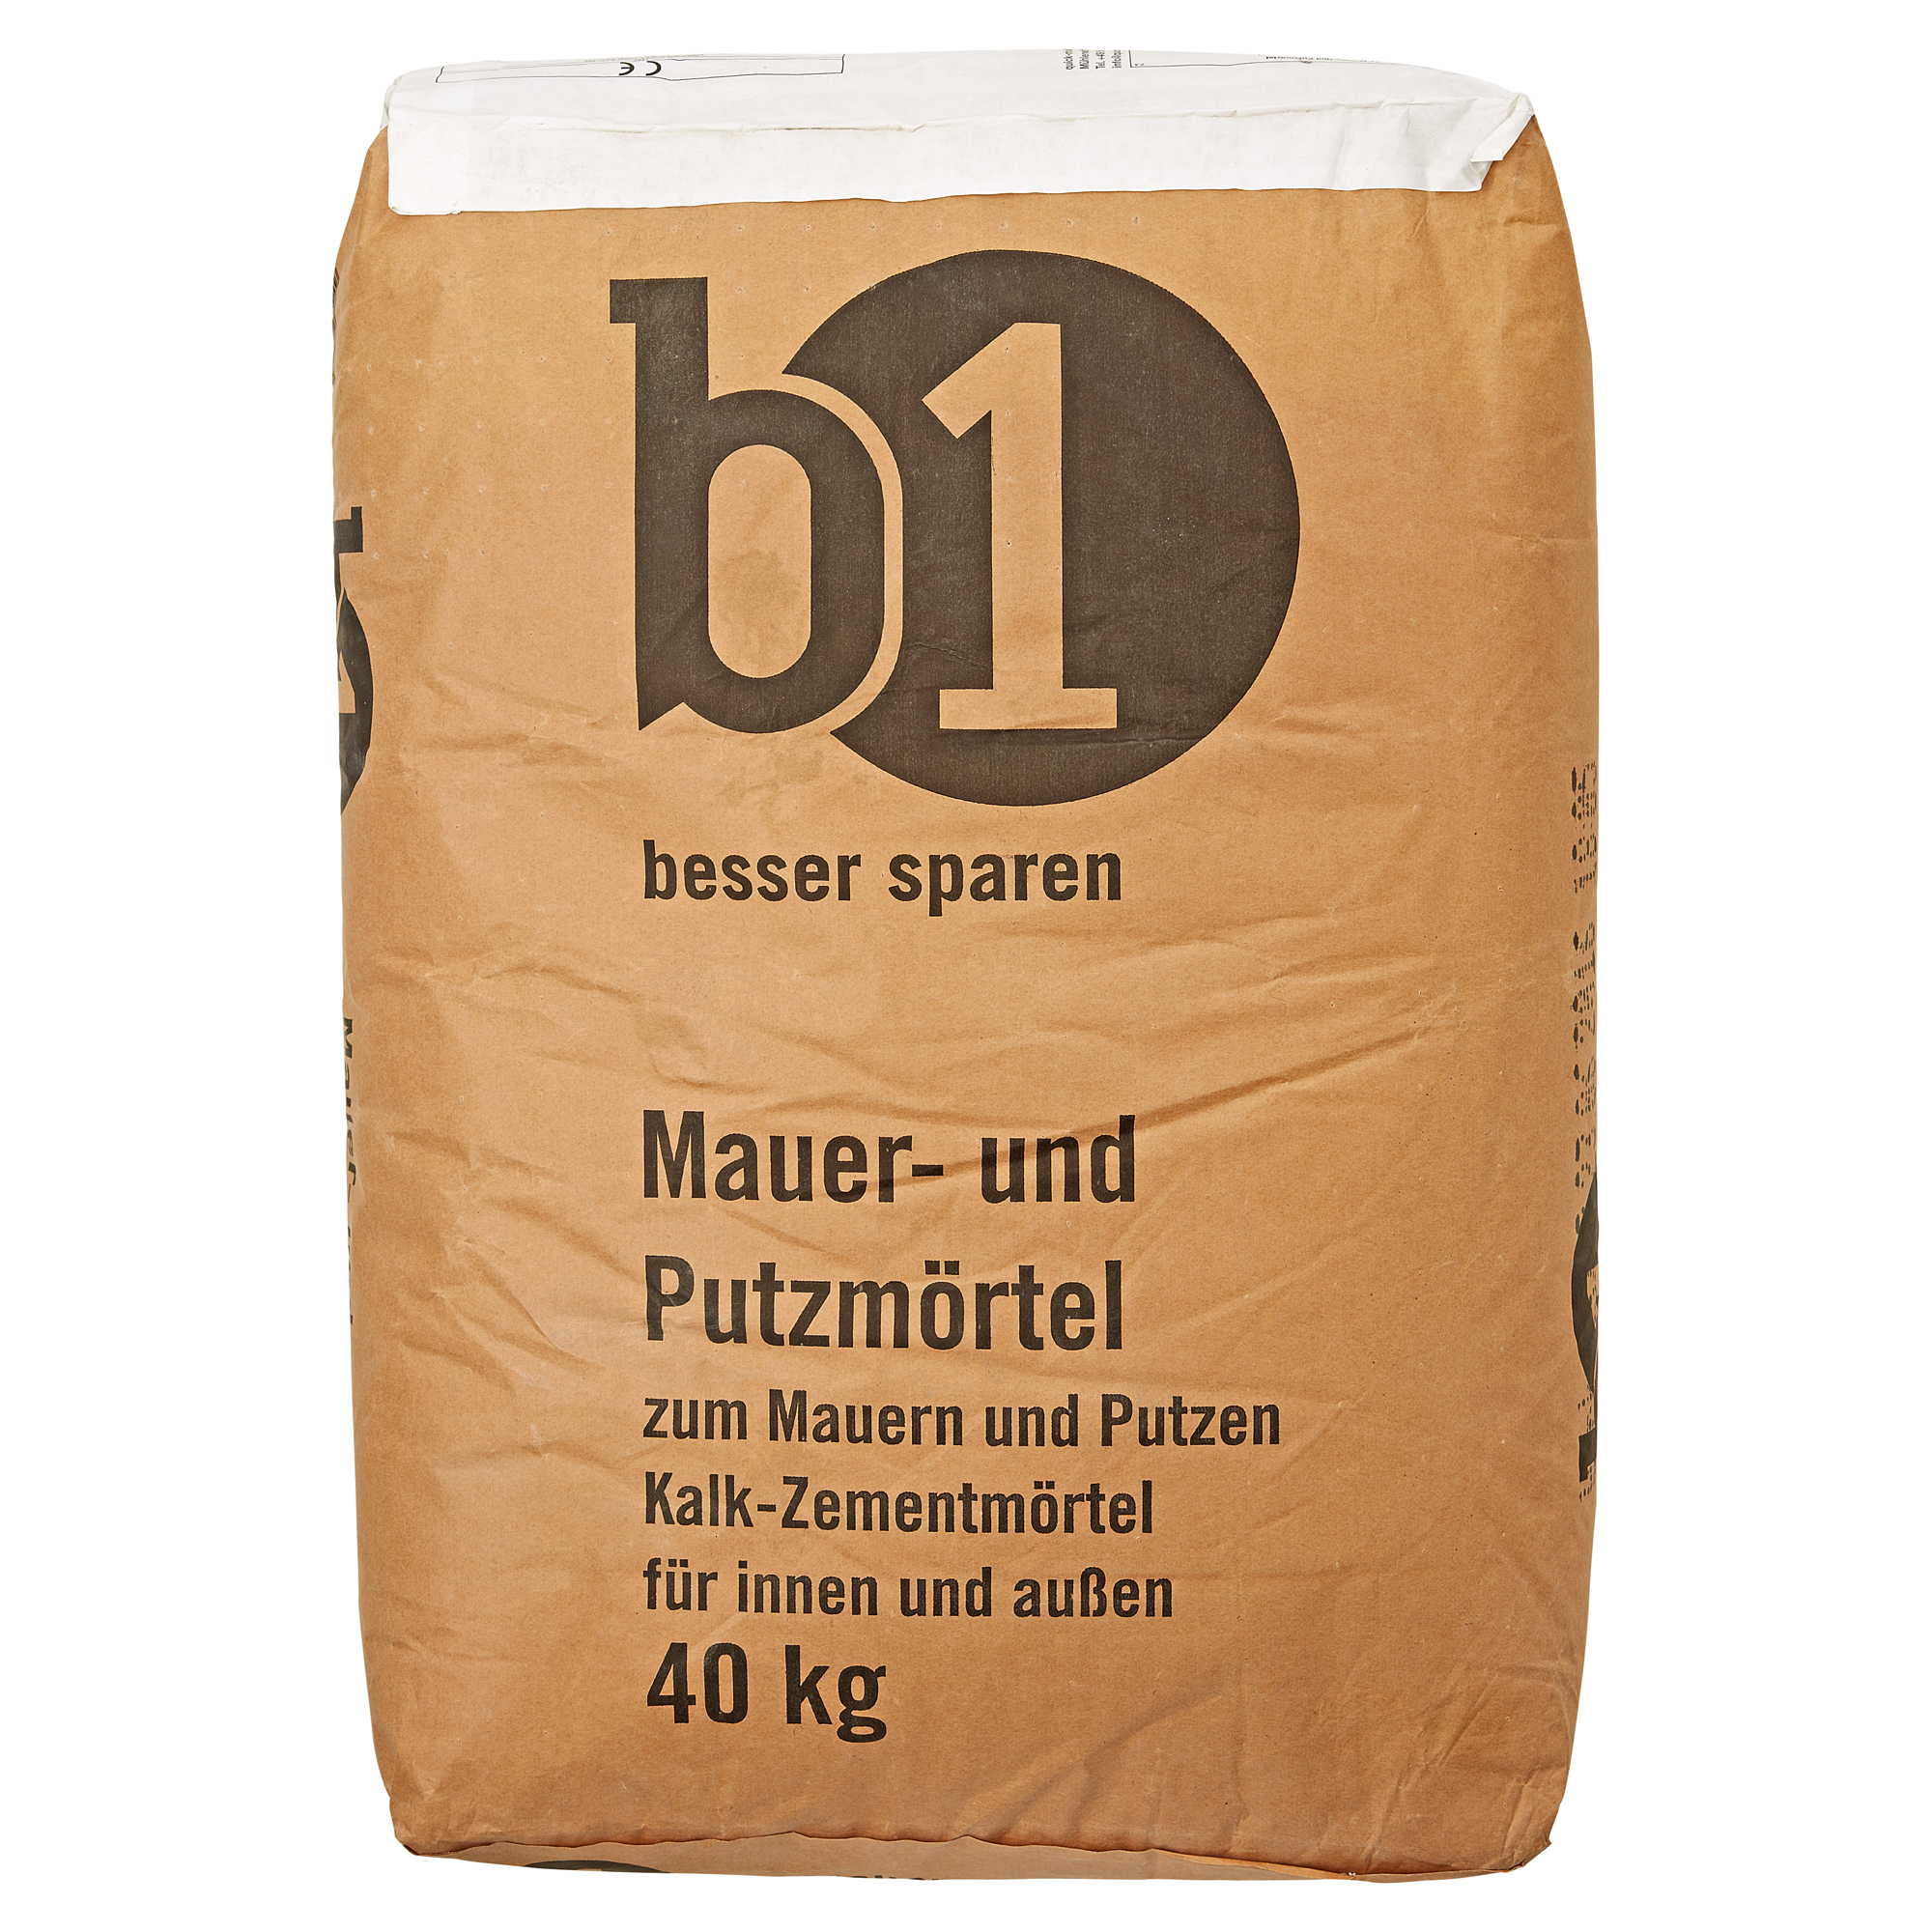 Mauer- und Putzmörtel 40 kg + product picture